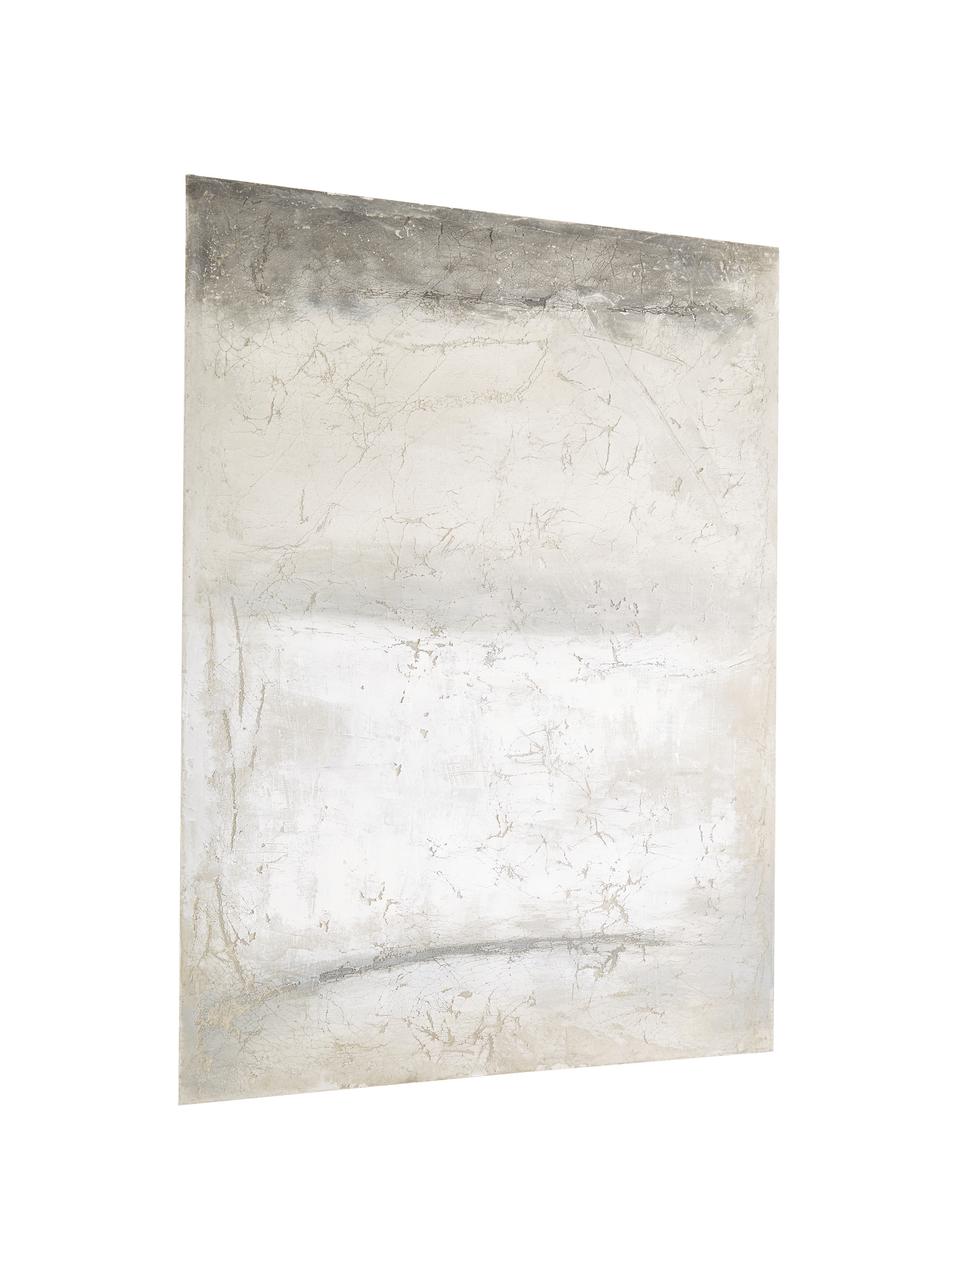 Handbeschilderde canvasdoek Shapes, Afbeelding: digitale print op canvas,, Grijs, 90 x 120 cm